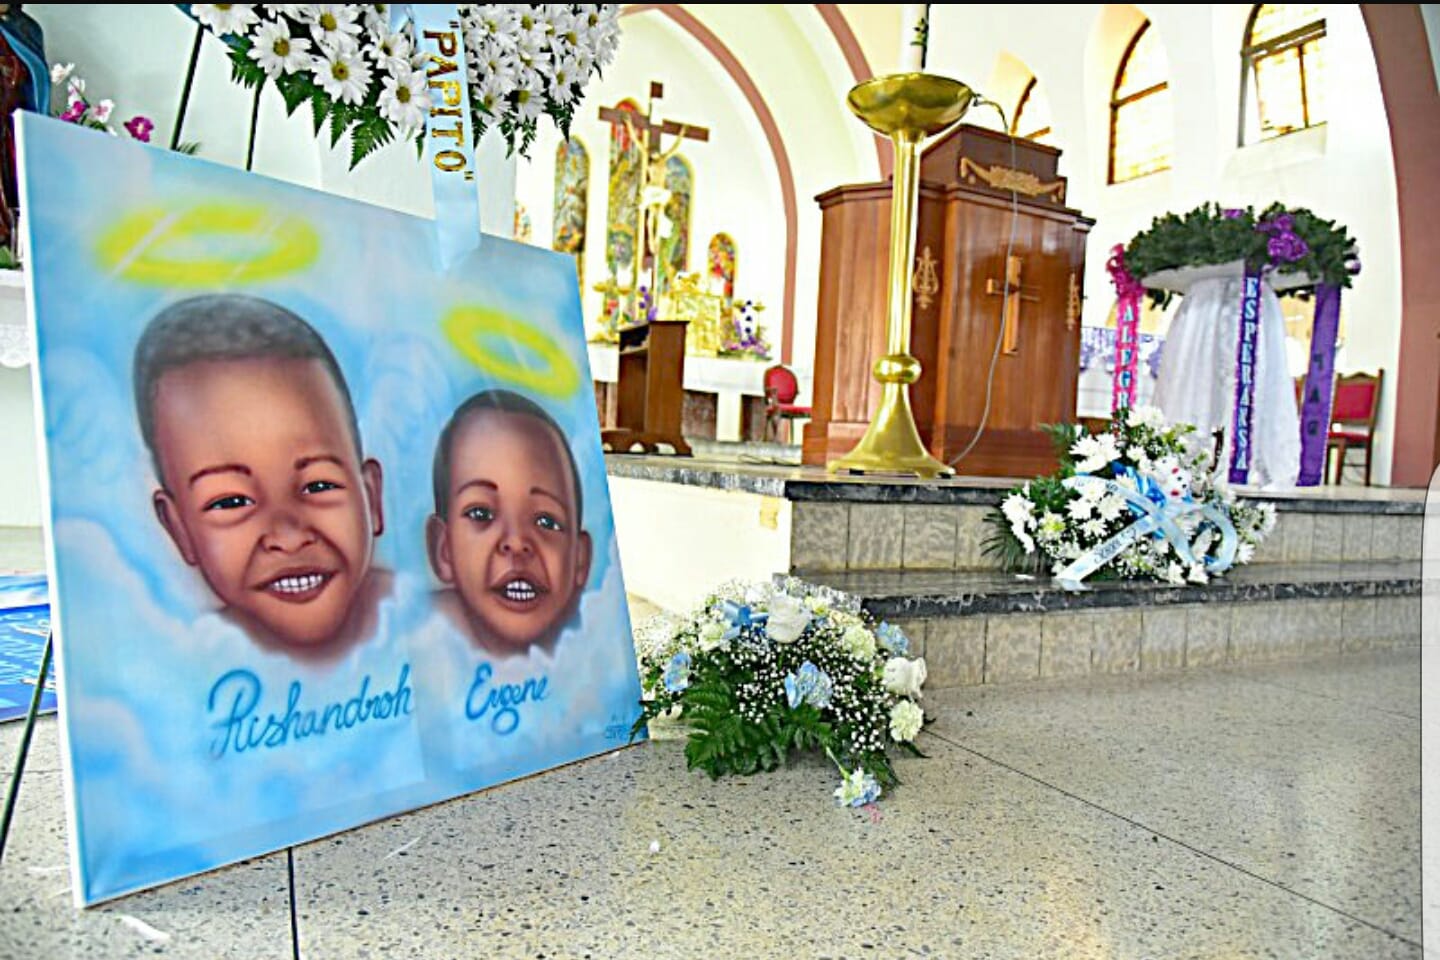 NOS | Moeder had vermoorde broertjes Aruba met eigen leven moeten verdedigen